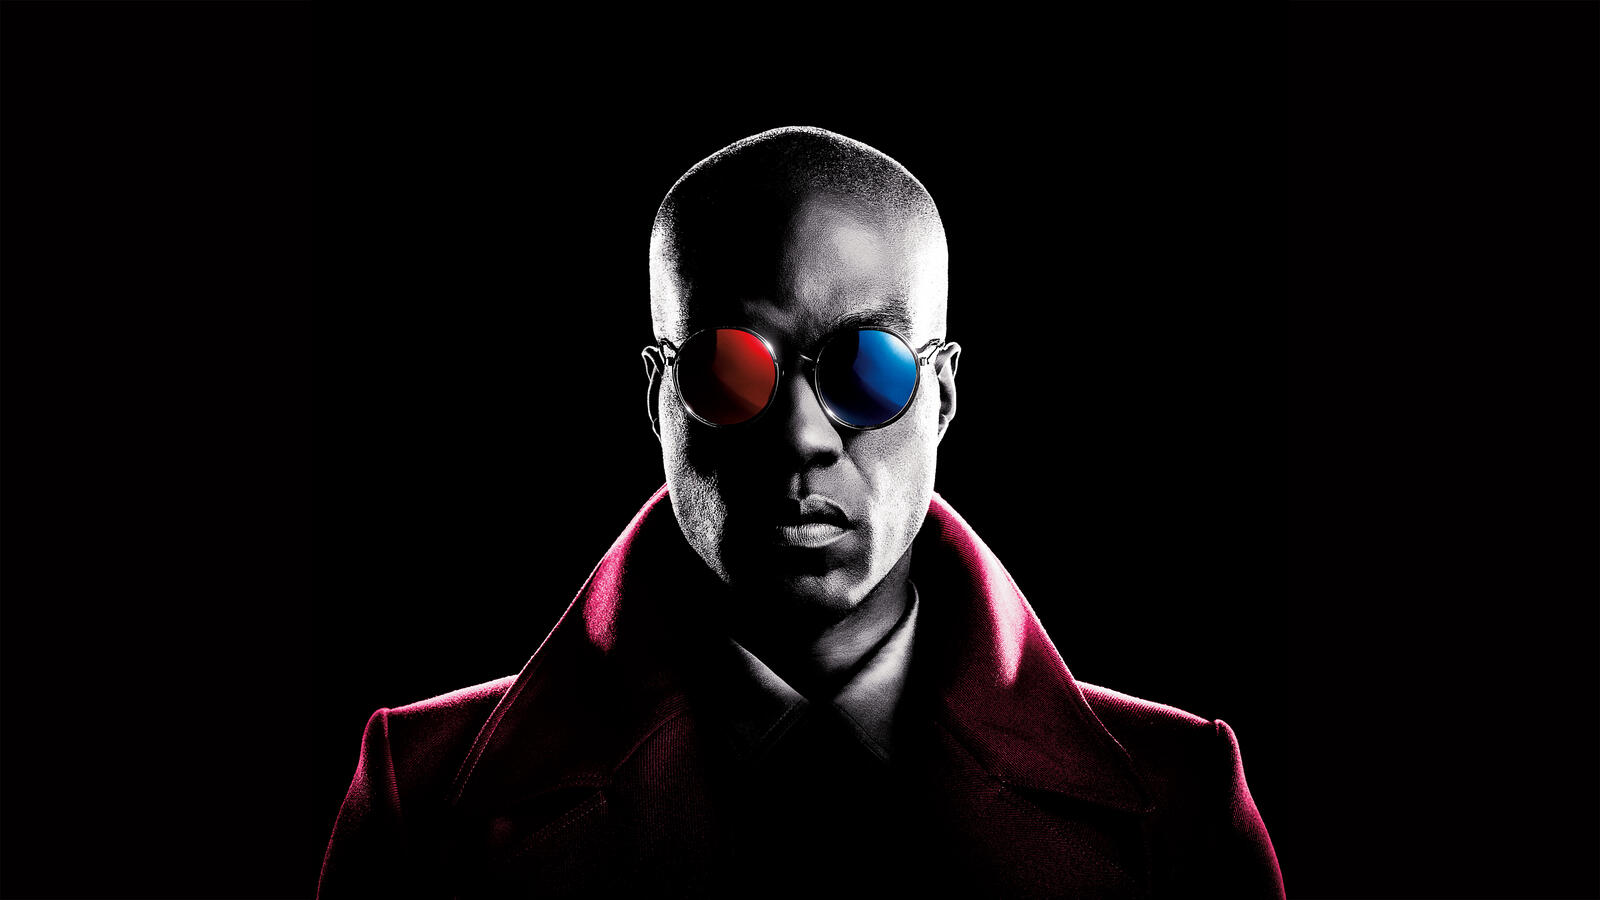 Бесплатное фото Мужчина в цветных очках из фильма матрица на черном фоне